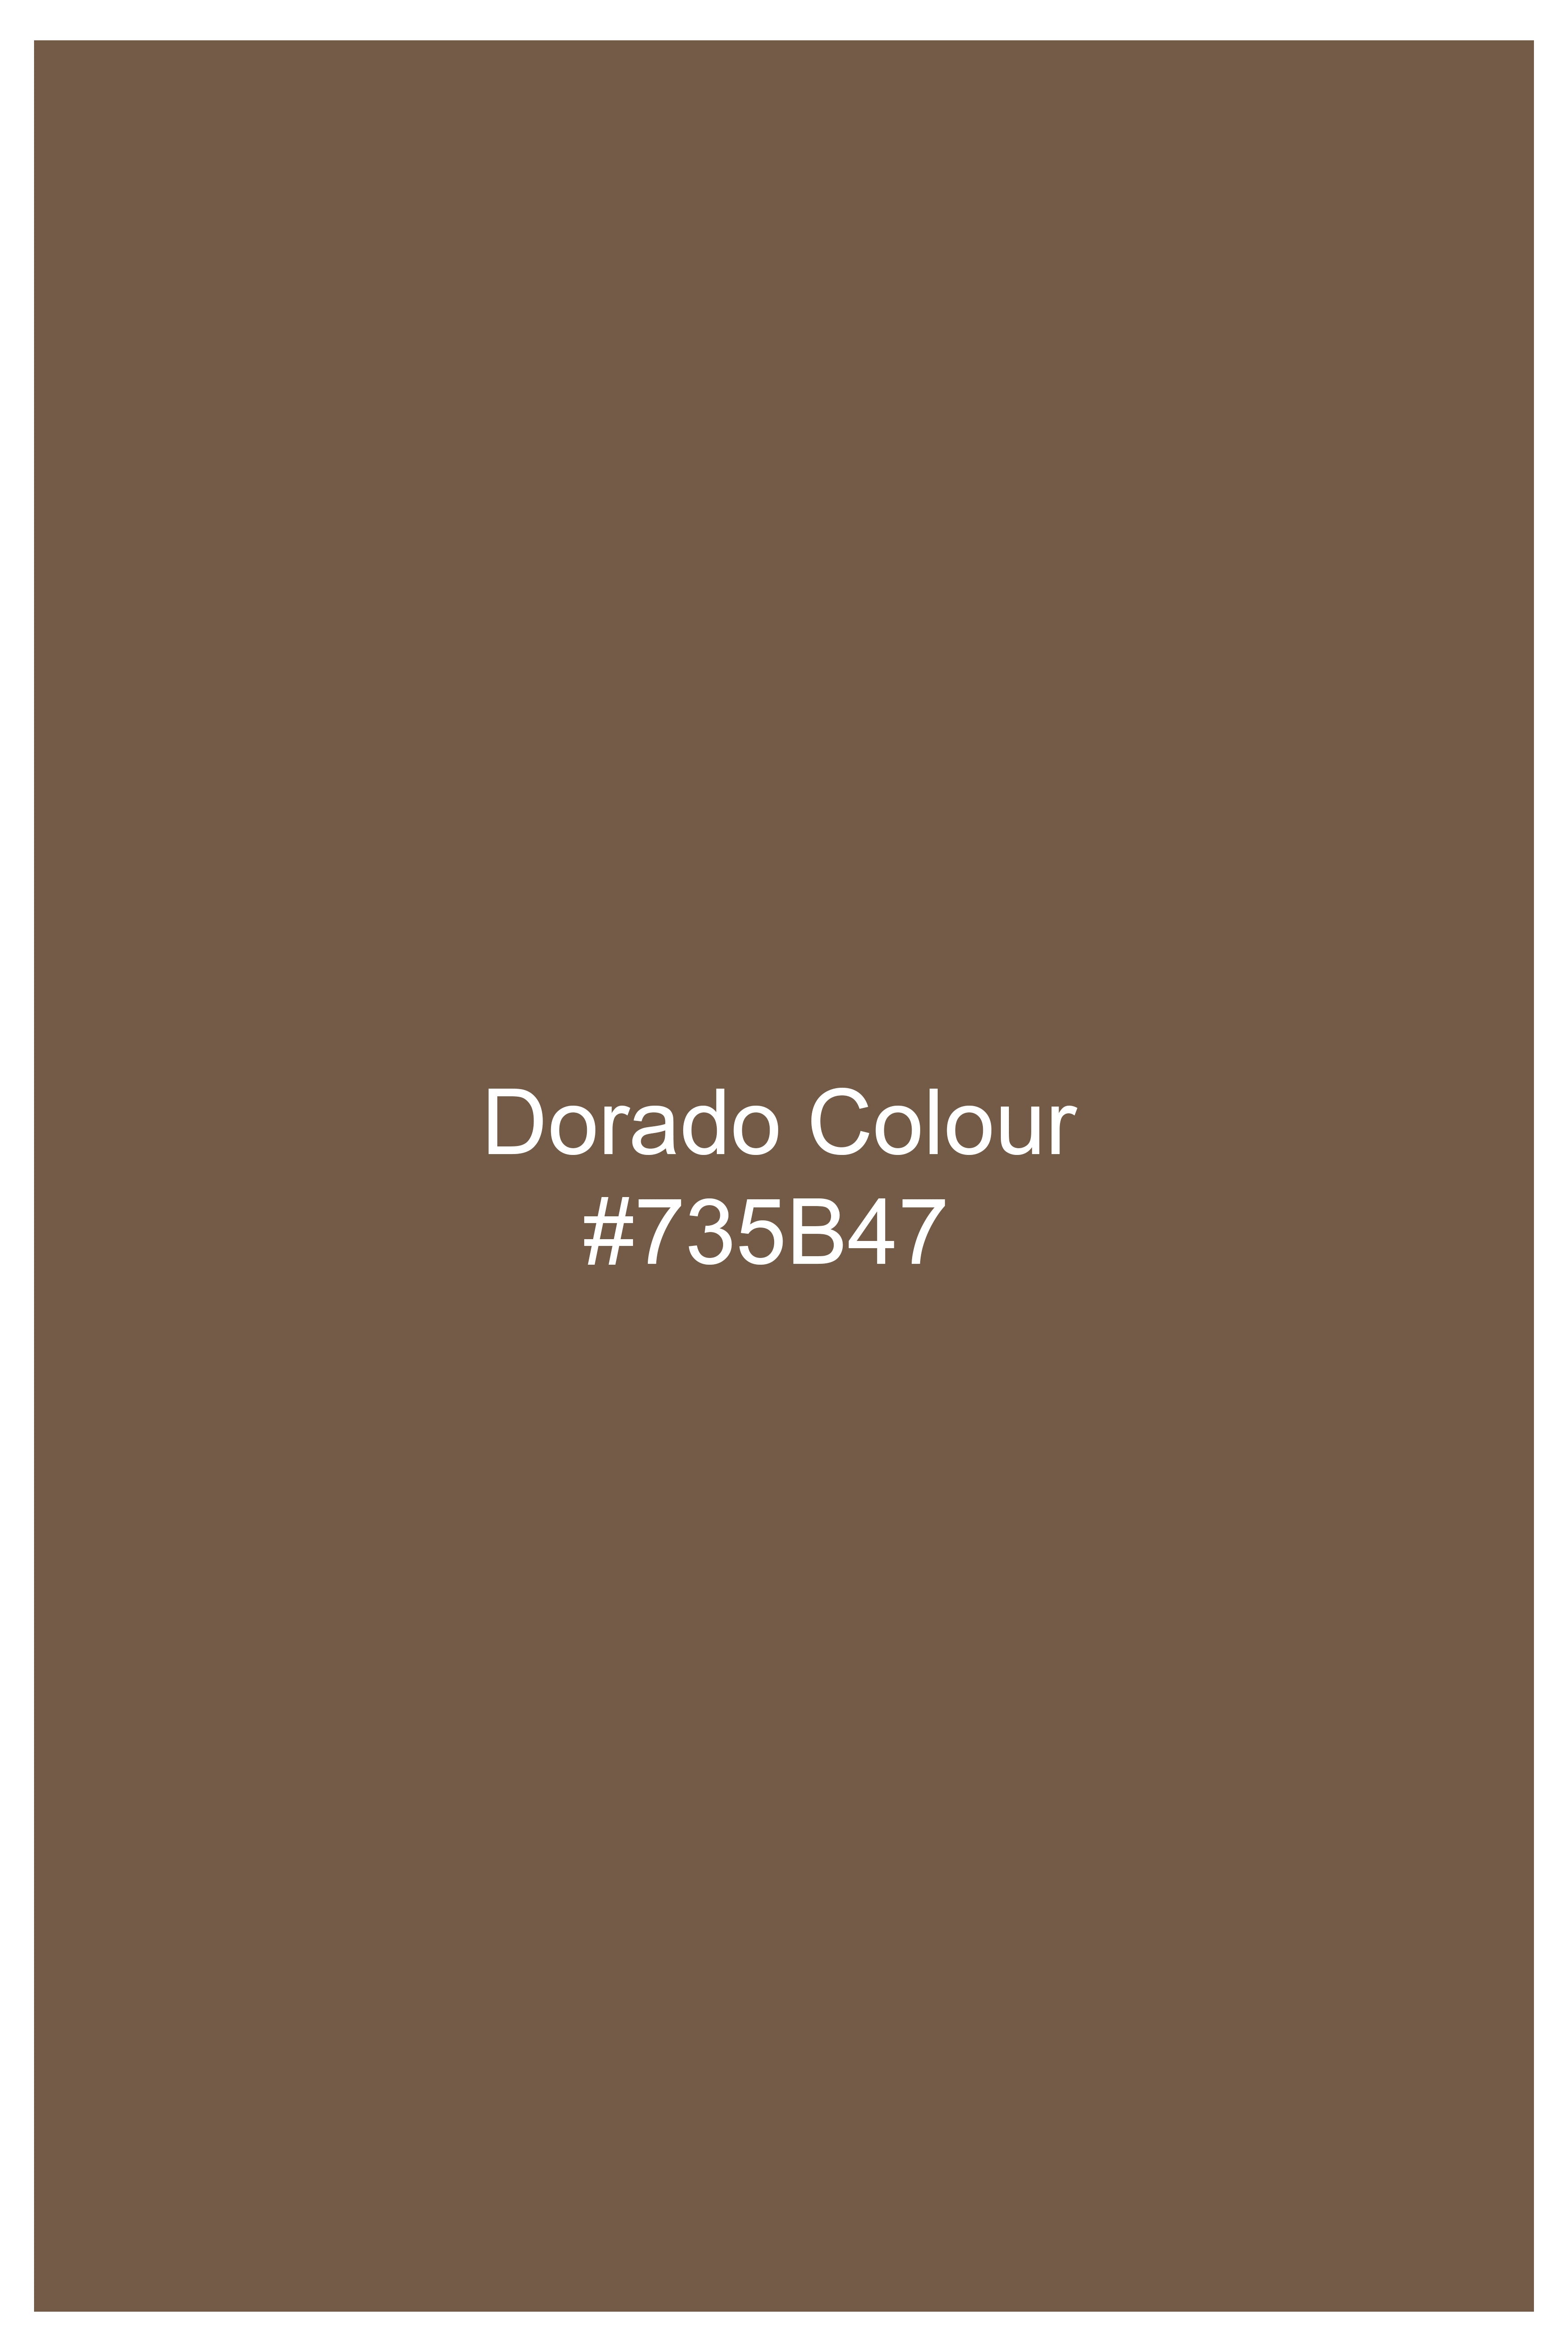 Dorado Brown Corduroy Premium Cotton Chinos Pant